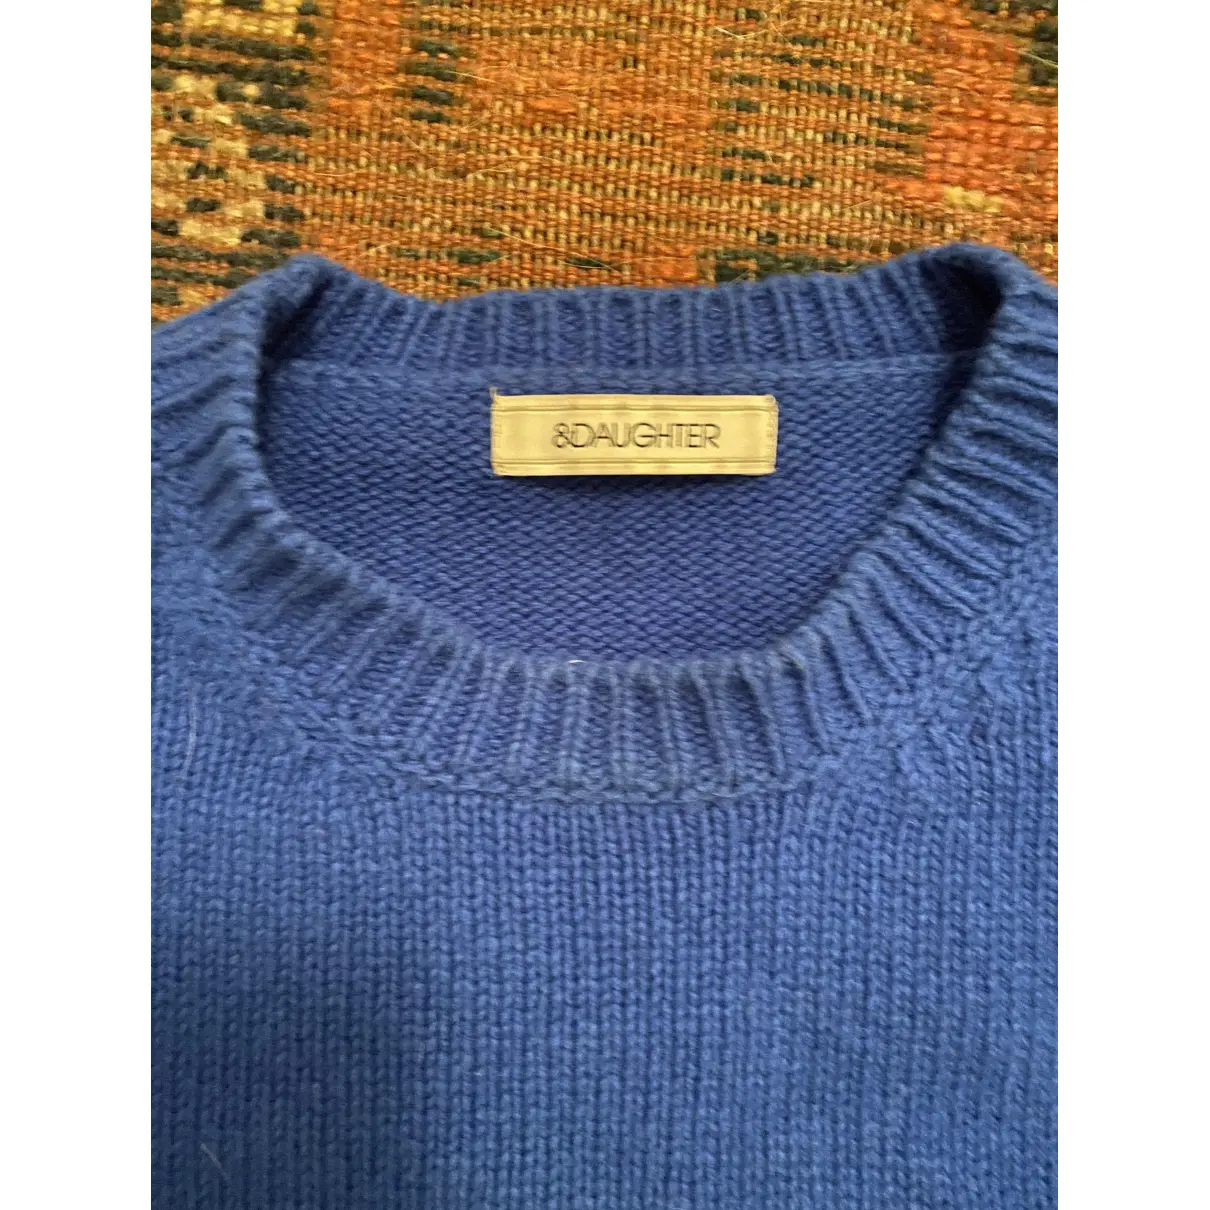 Buy &Daughter Wool jumper online